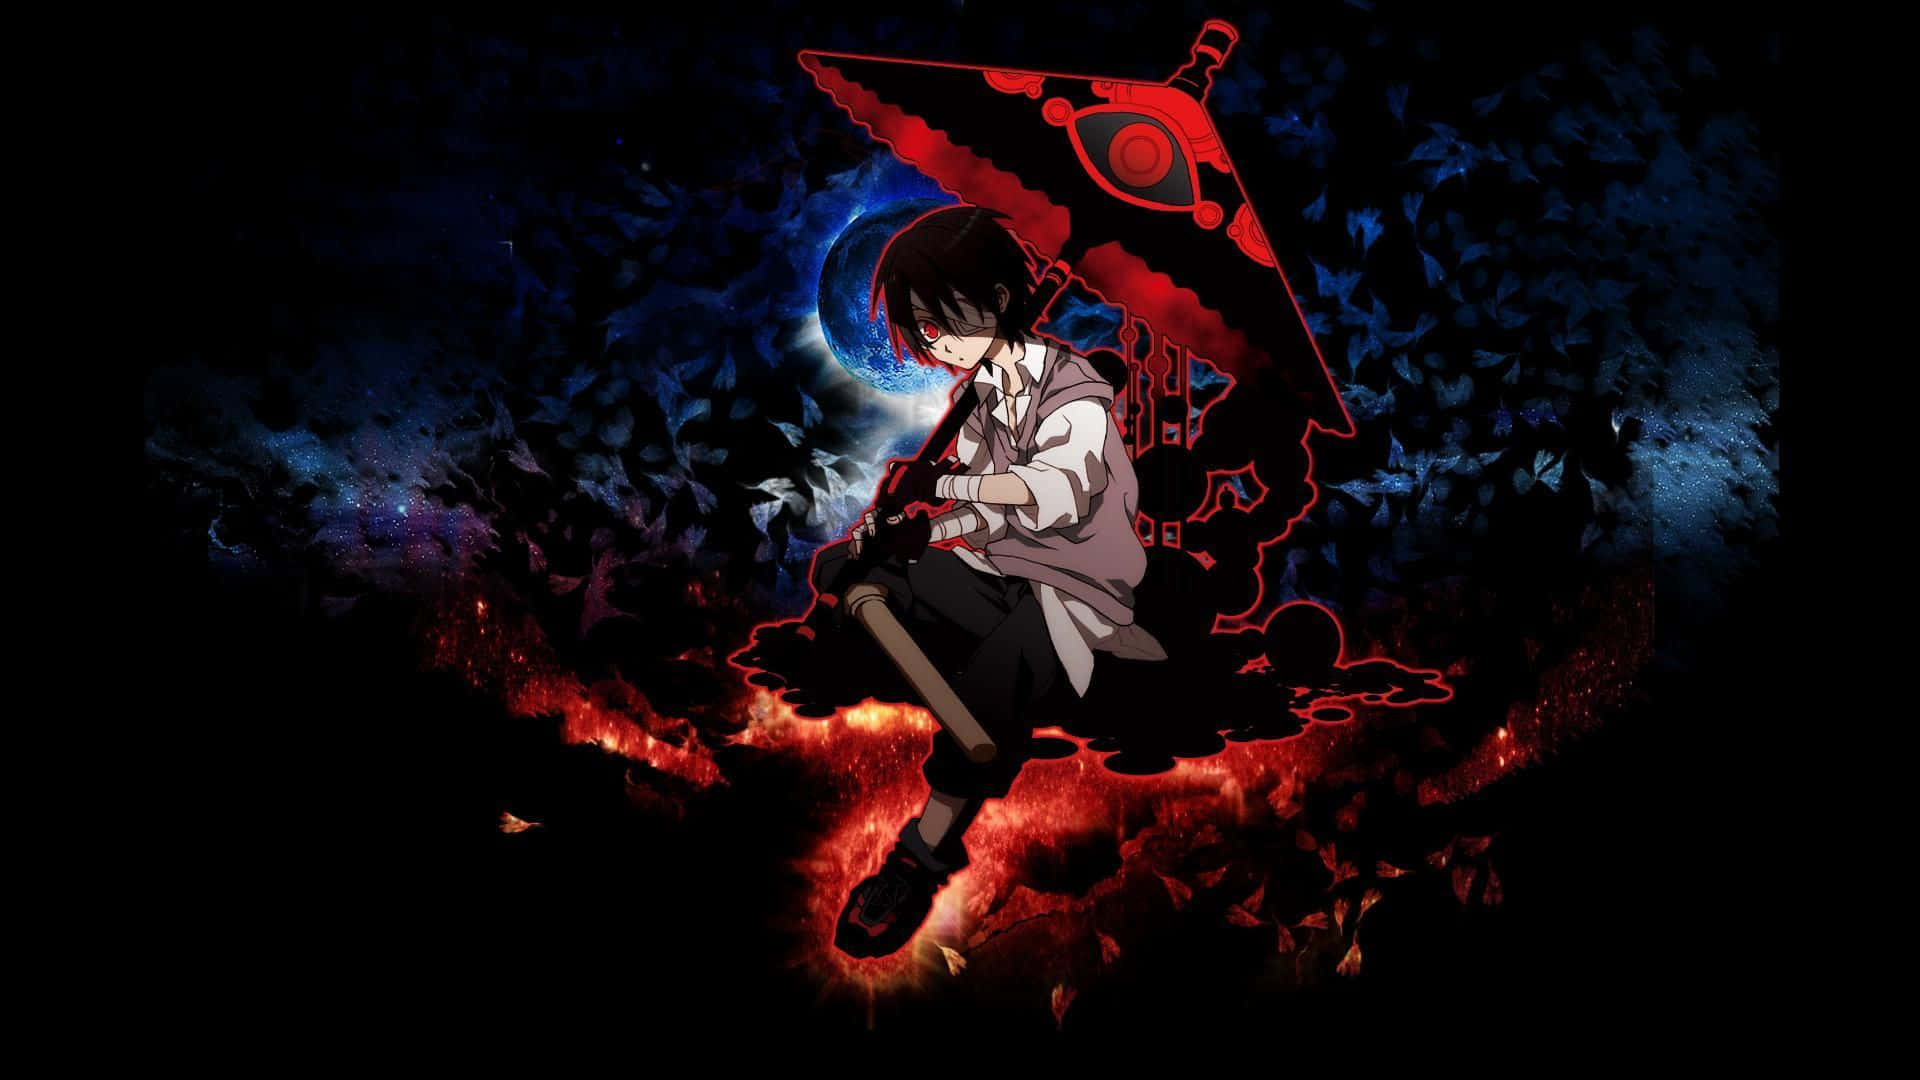 Garotode Anime Doente Com Guarda-chuva Vermelho E Preto. Papel de Parede